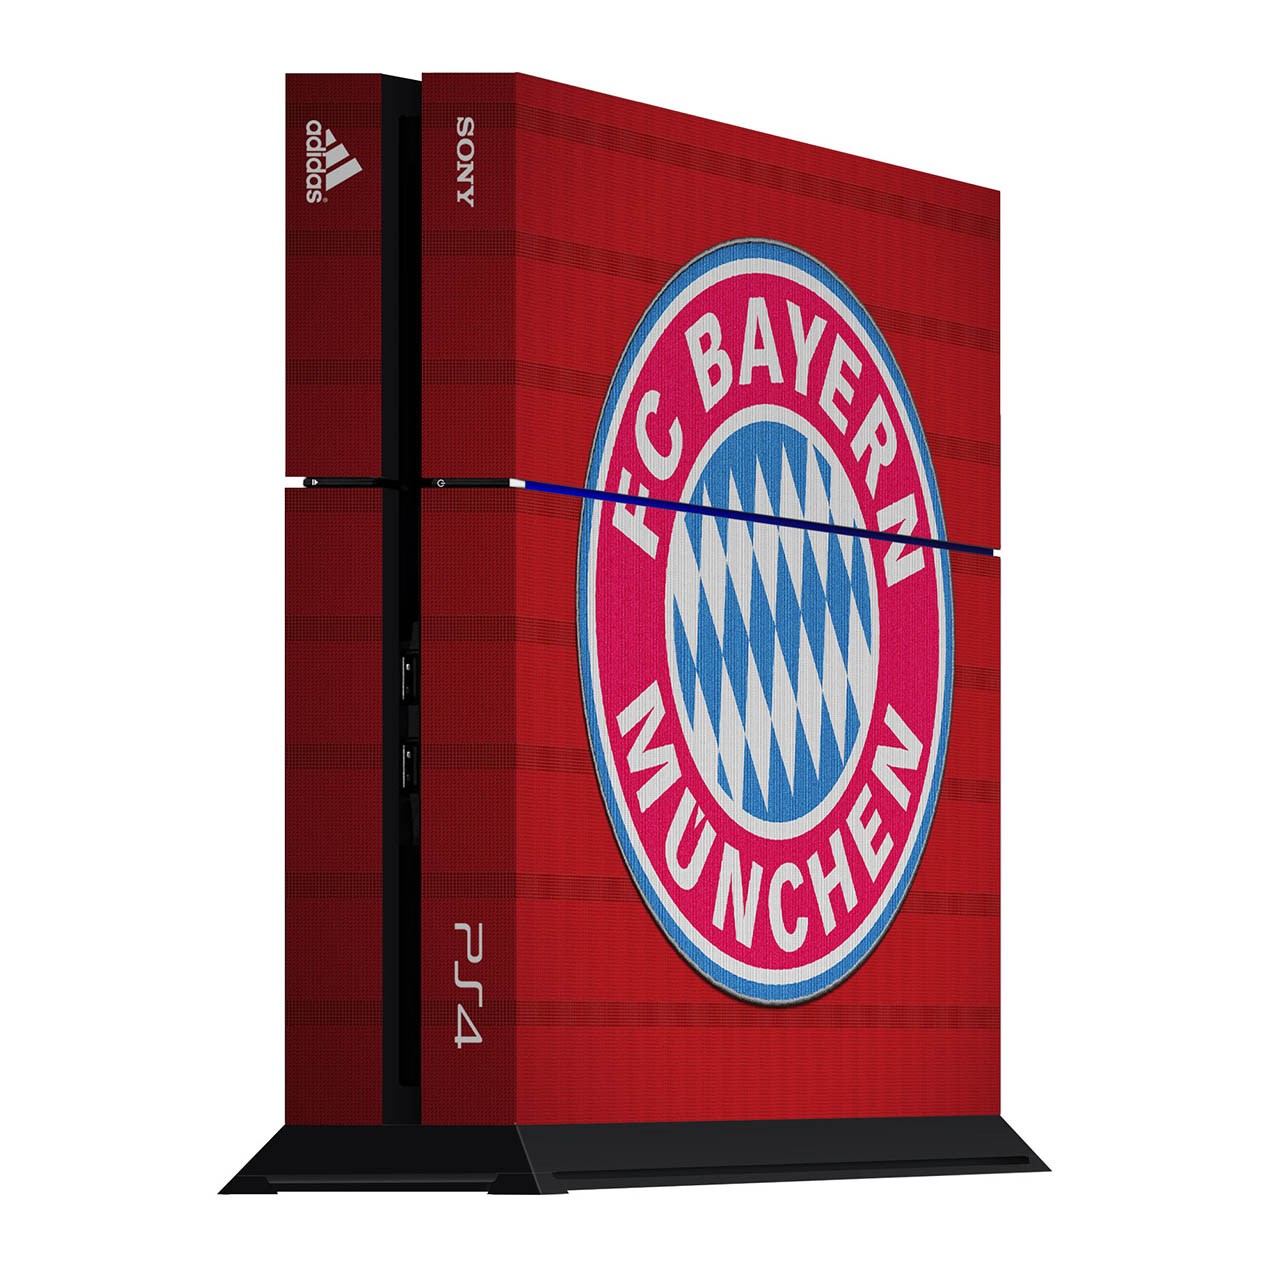 برچسب عمودی پلی استیشن 4 ونسونی طرح Bayern Munchen 2016